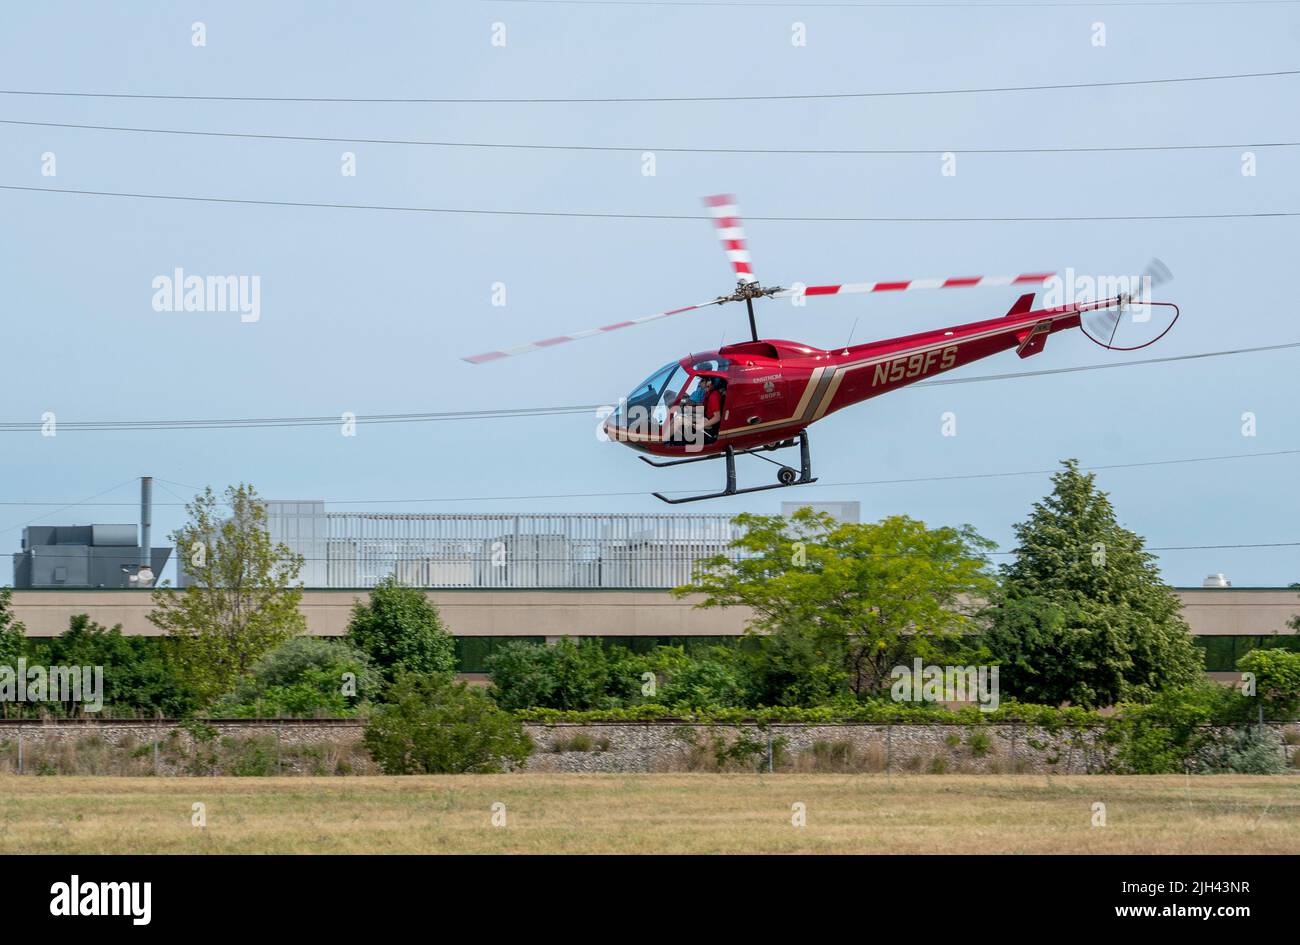 20 juin 2021 St Joseph MI États-Unis ; Un hélicoptère rouge s'envole avec un passager lors d'un spectacle aérien au Michigan Banque D'Images